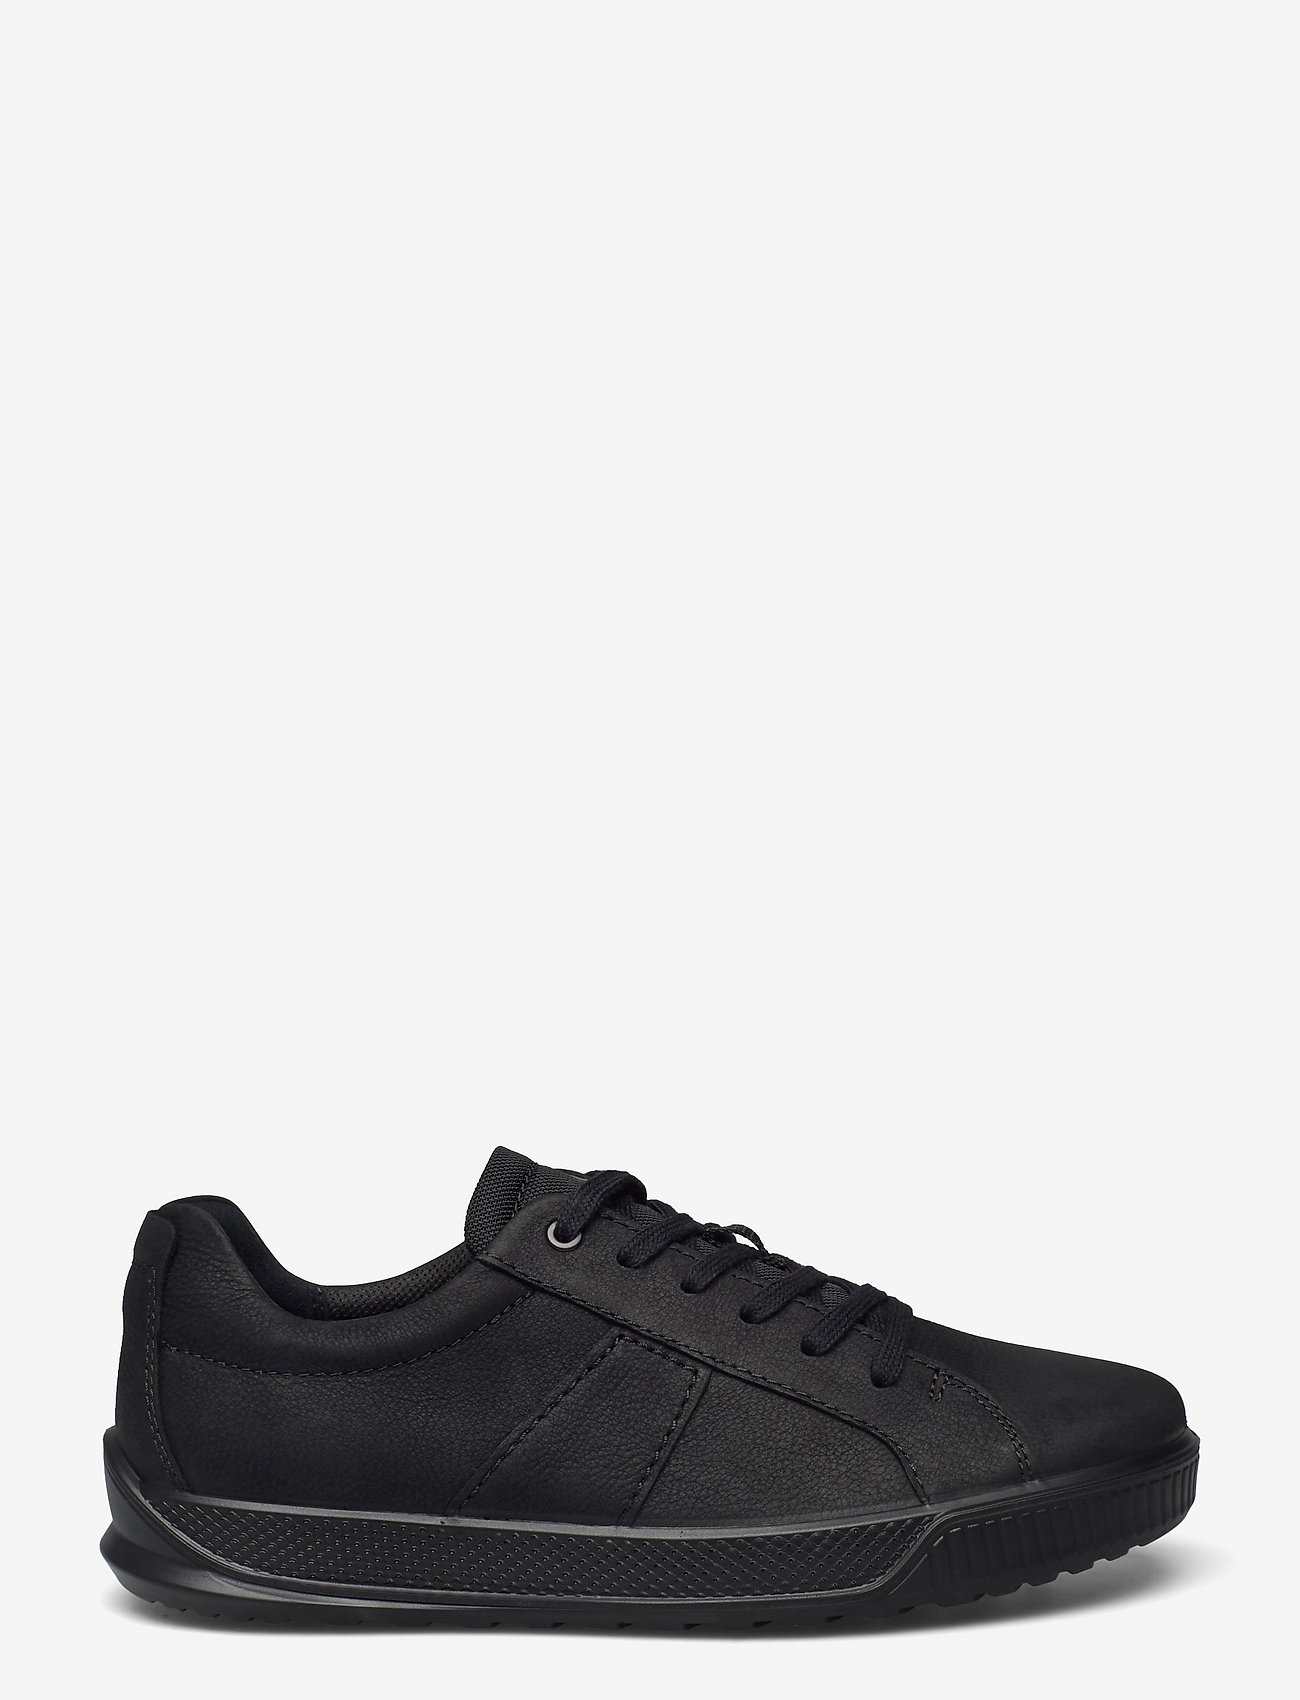 ECCO - BYWAY - låga sneakers - black/black - 1